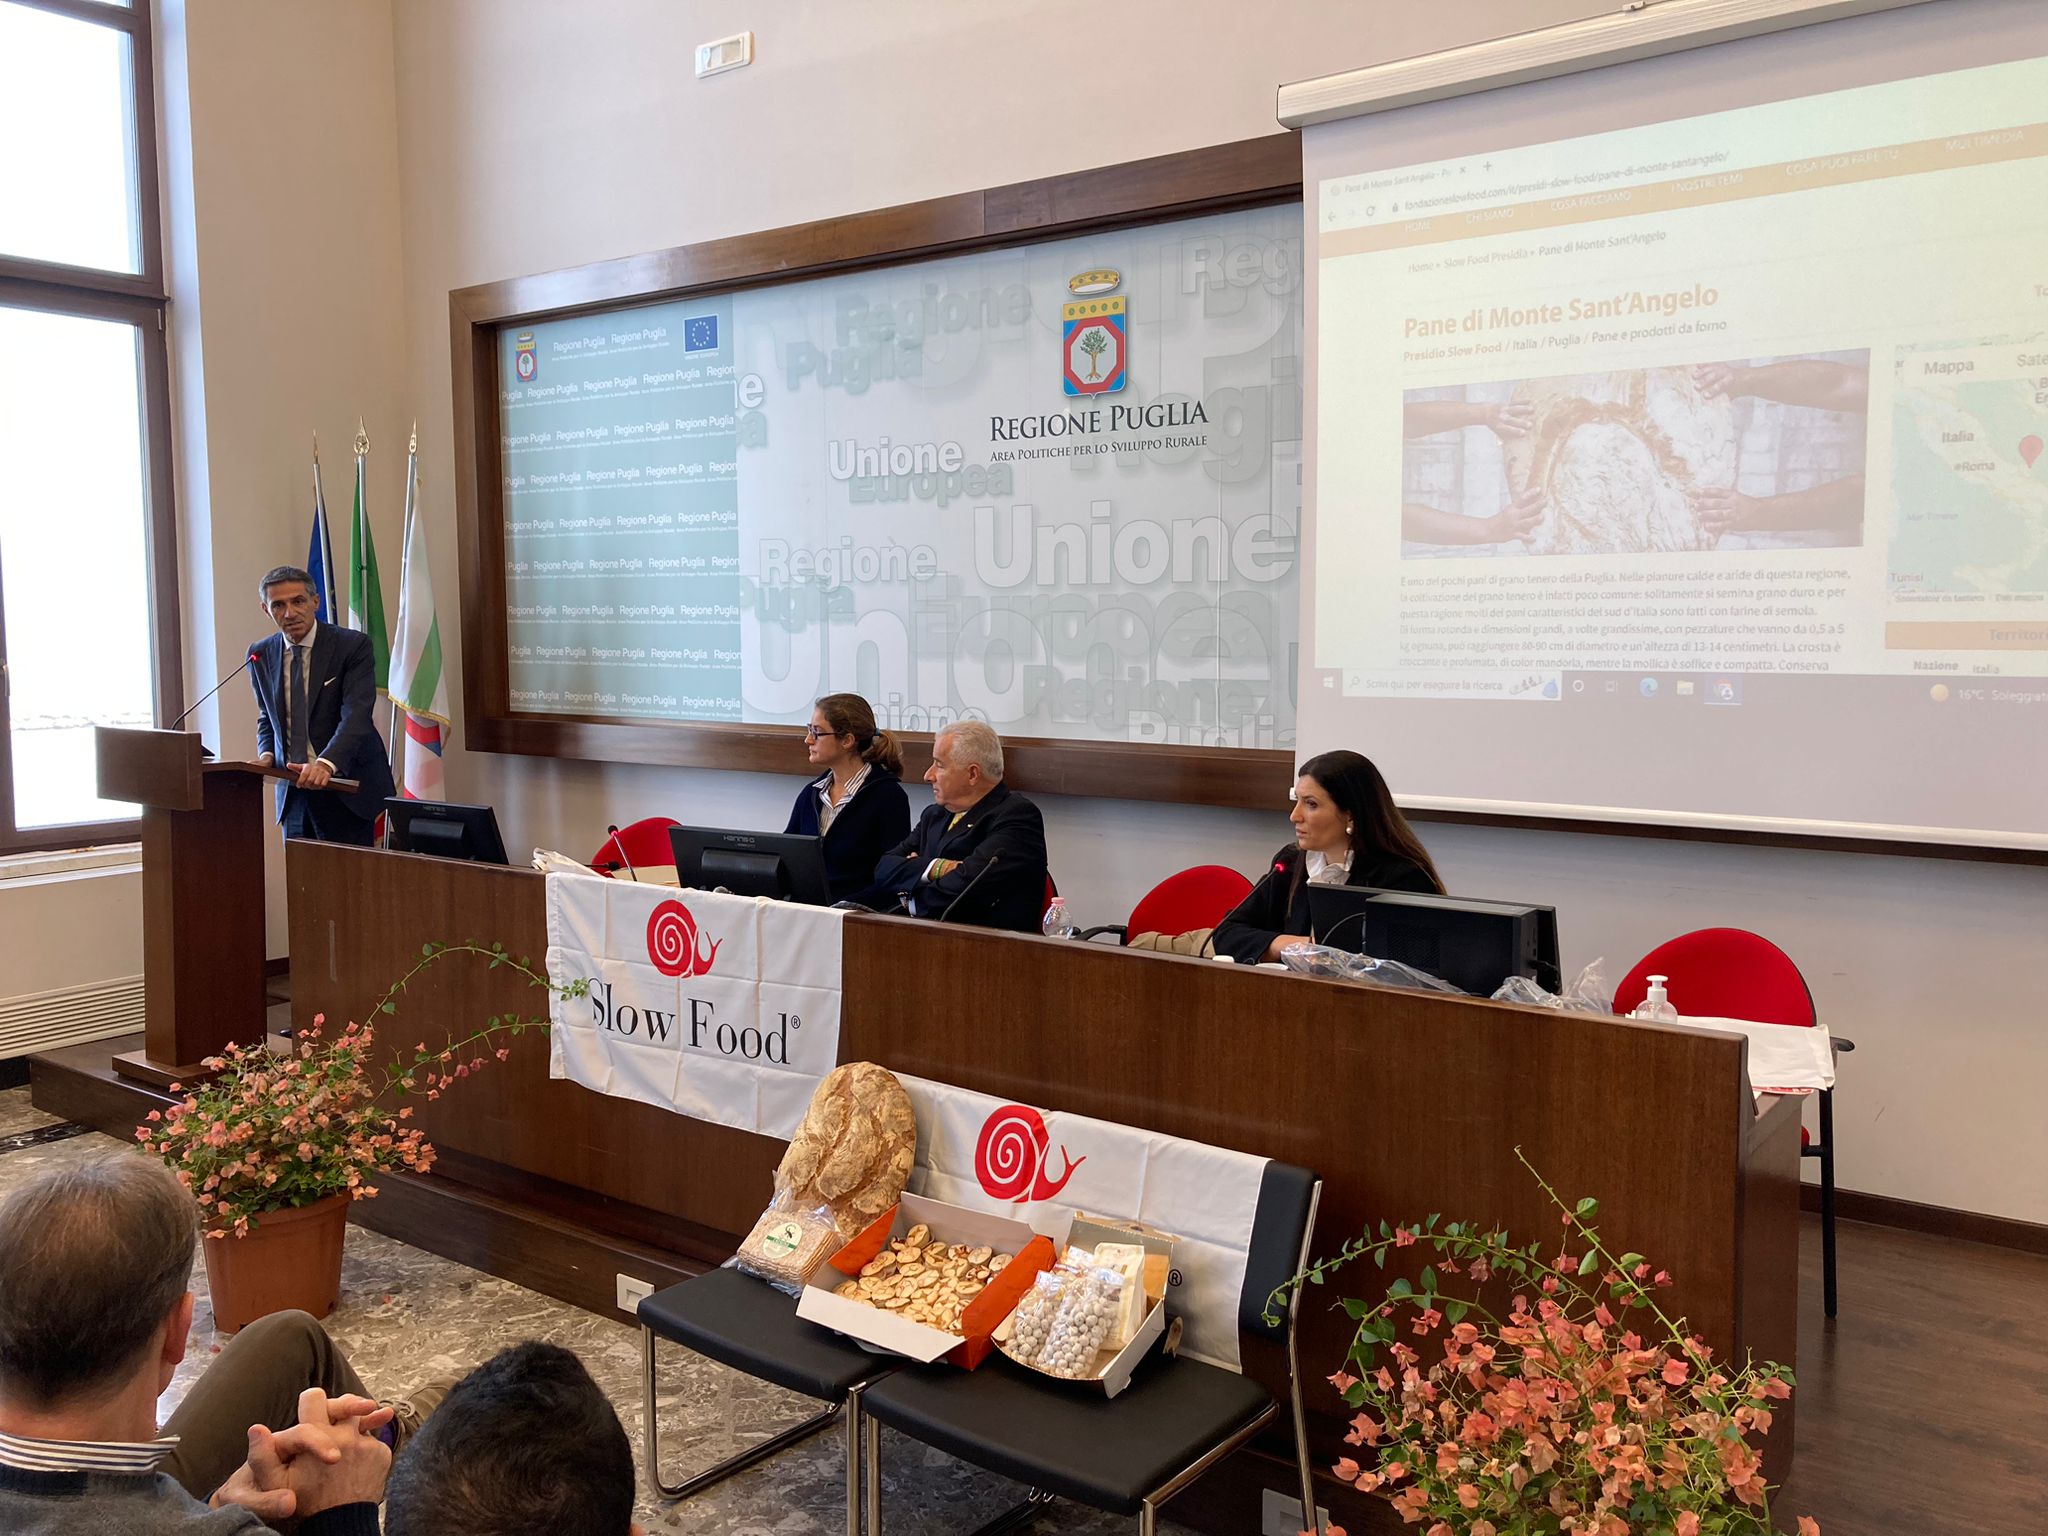 Galleria Tutela e valorizzazione delle eccellenze agroalimentari: Slow food e Regione insieme con il progetto “Presidiamo la Puglia” - Diapositiva 1 di 6